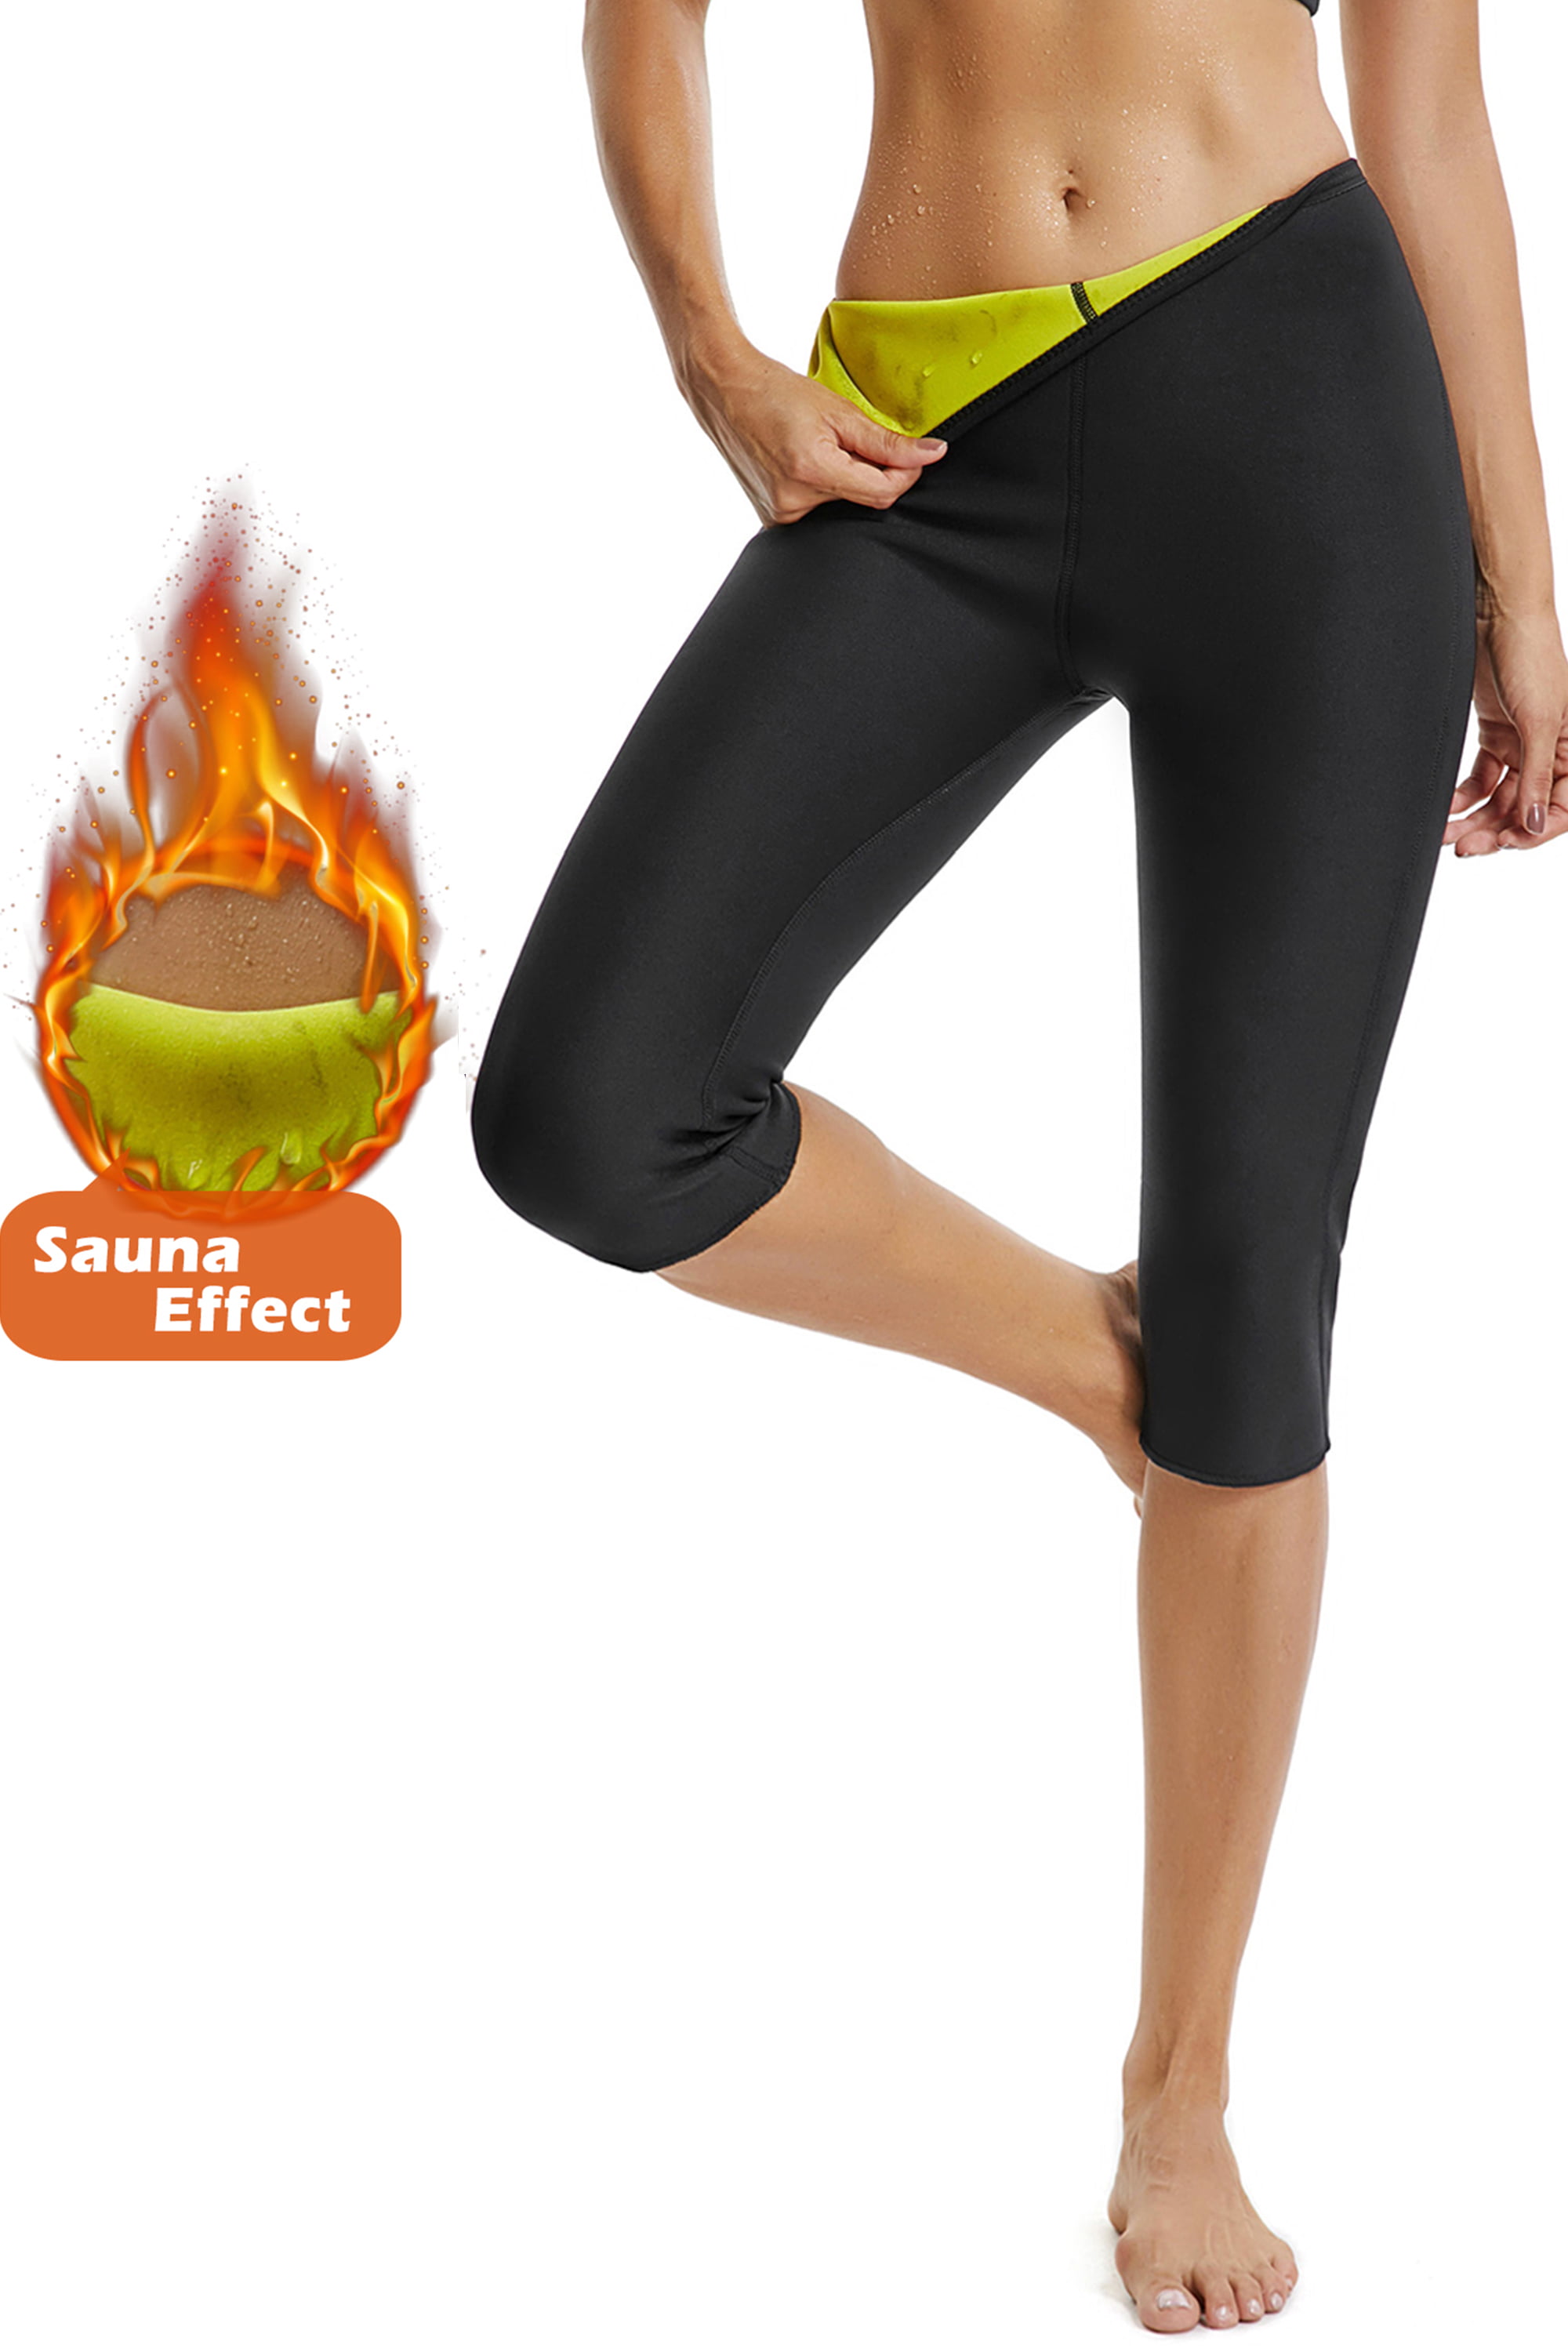 Womens Neoprene Sweat Sauna Burning Body Shaper Slimming Weight Loss Yoga Pants